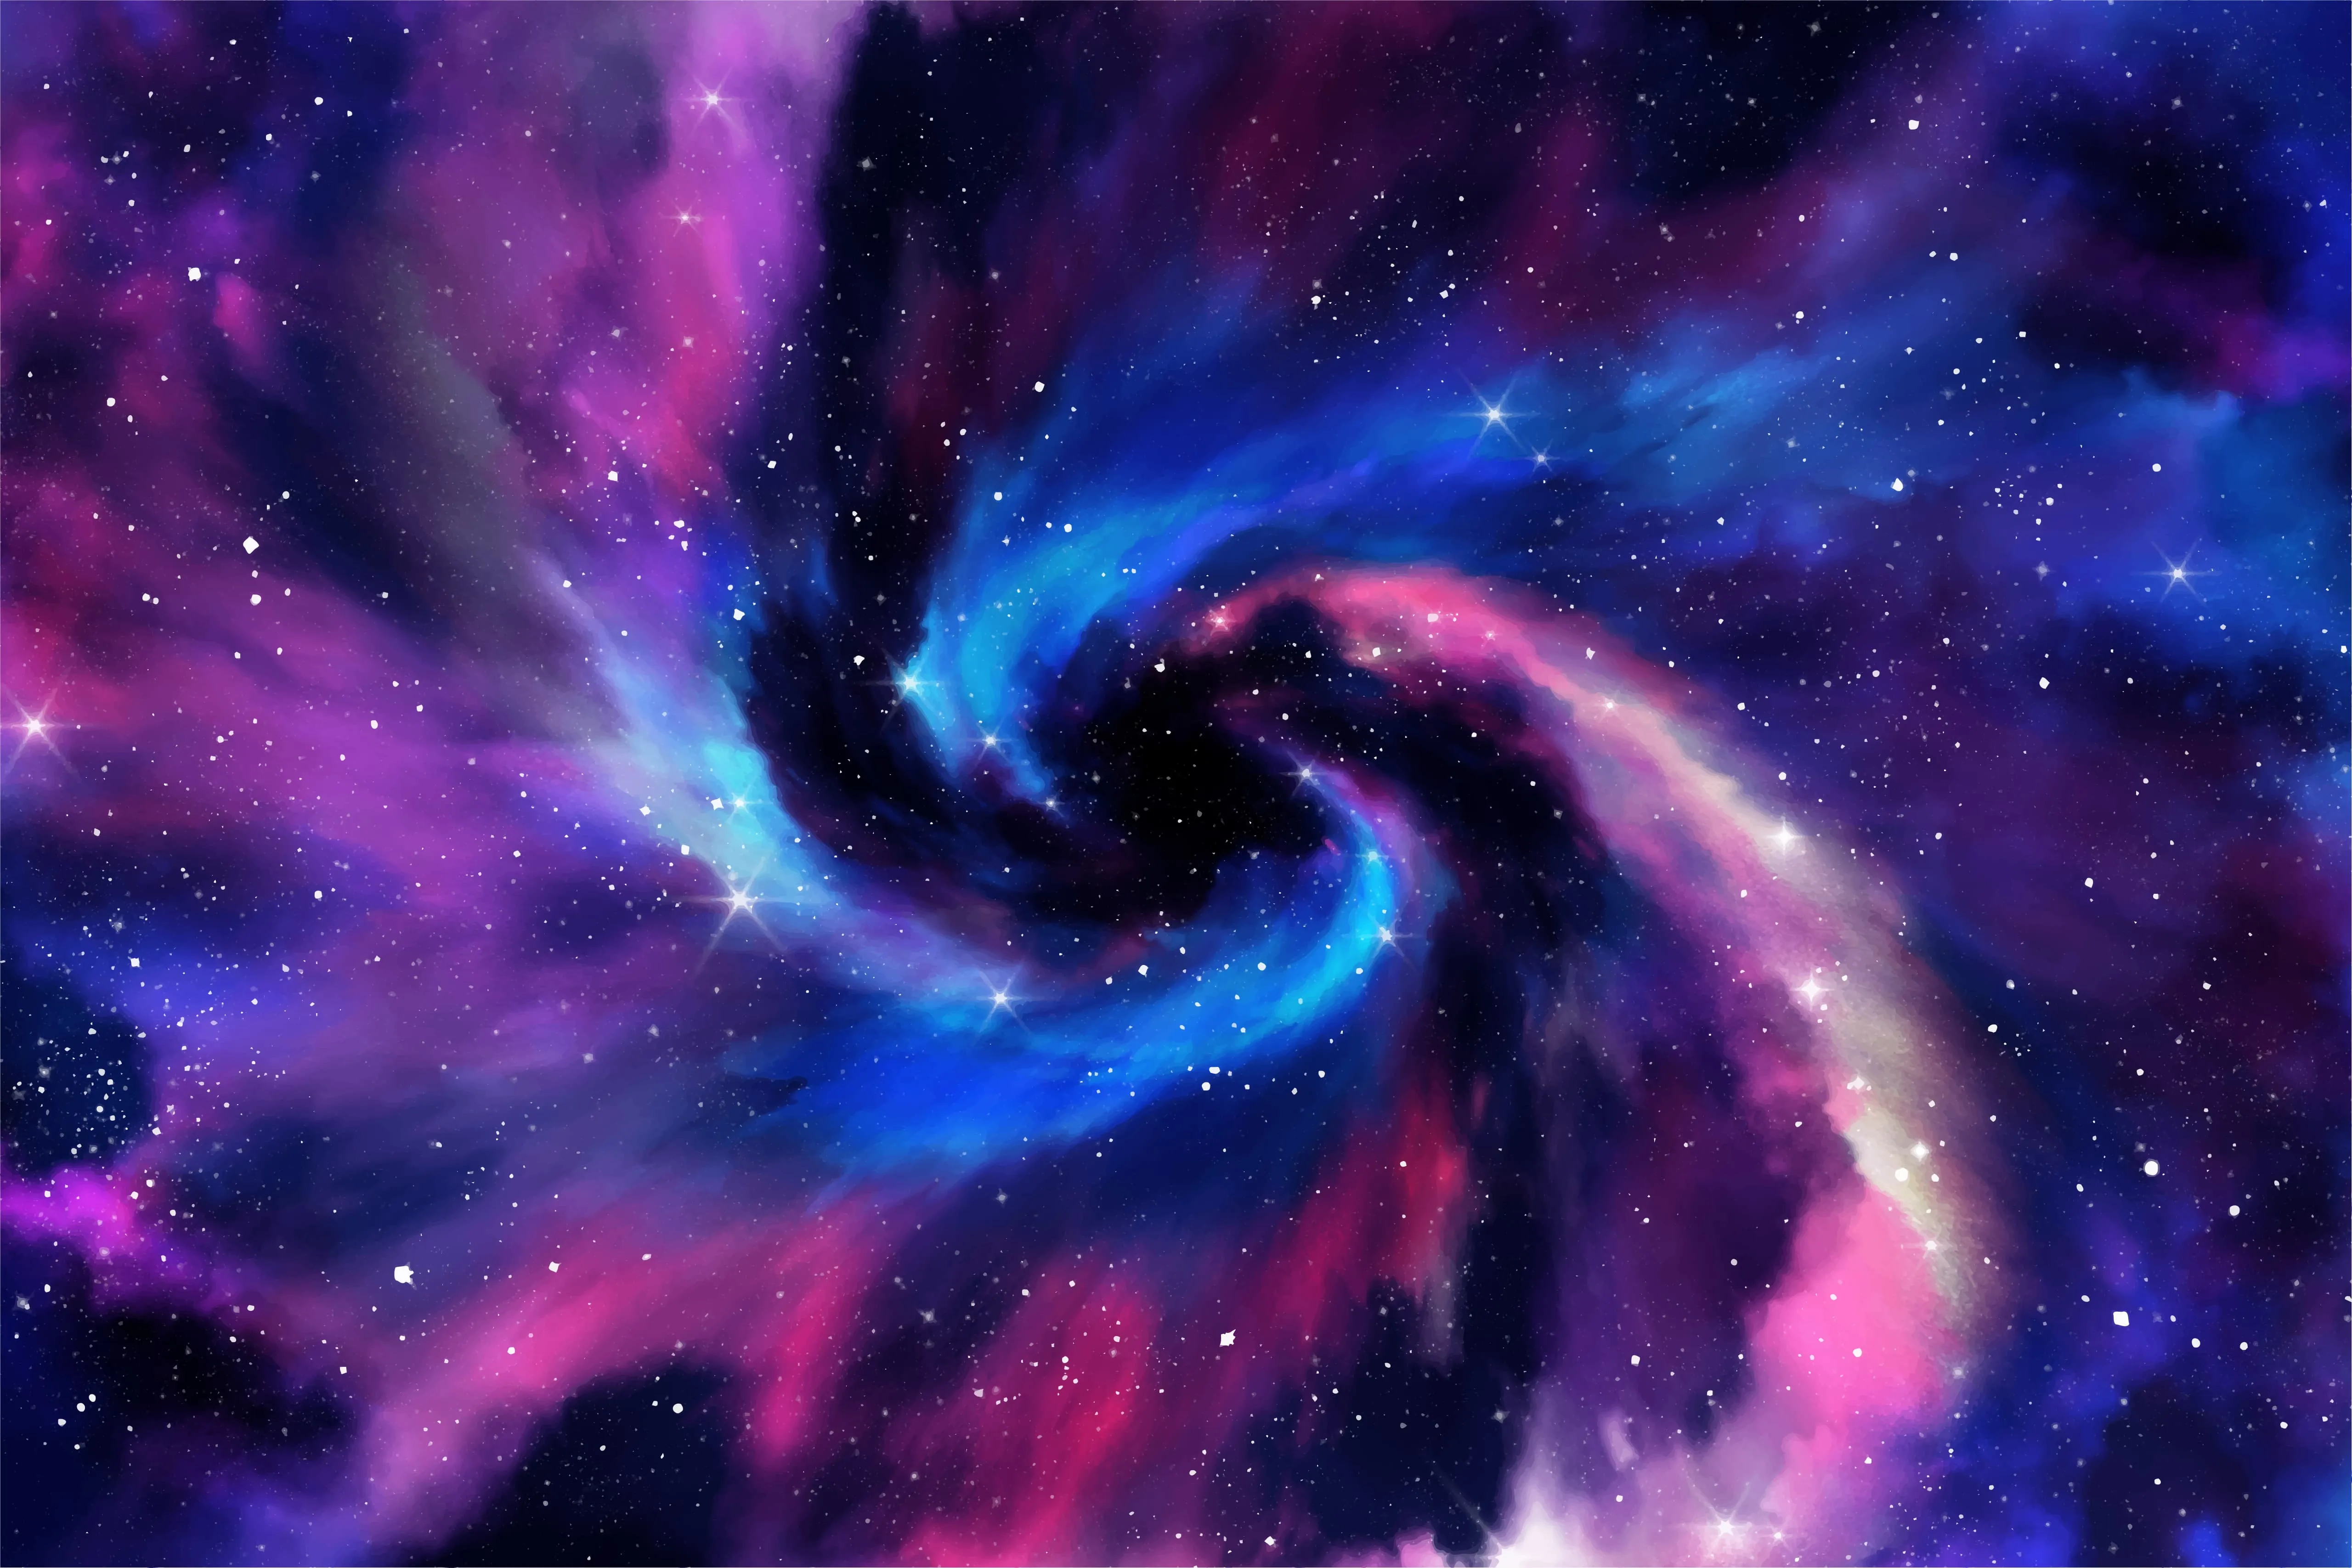 Značka a logo ROG Nebula HDR na modrom a fialovom pozadí s vesmírnou tematikou.